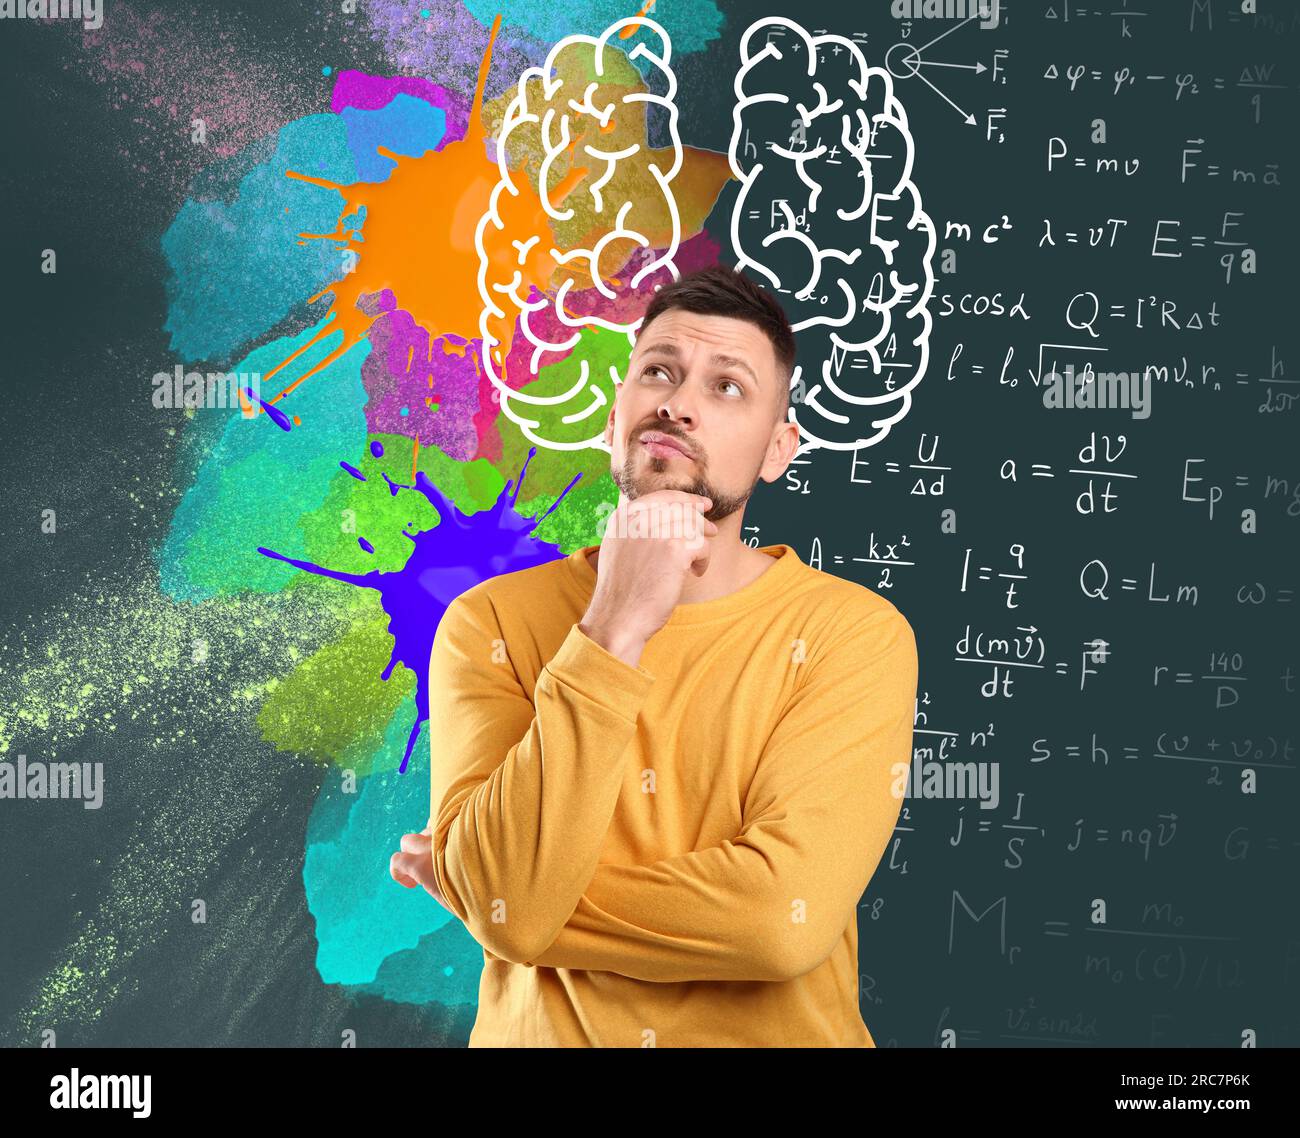 Logik und Kreativität. Der Mensch und die Darstellung der Gehirnhemisphären. Verschiedene Formeln und helle Farbflecken auf der Tafel Stockfoto